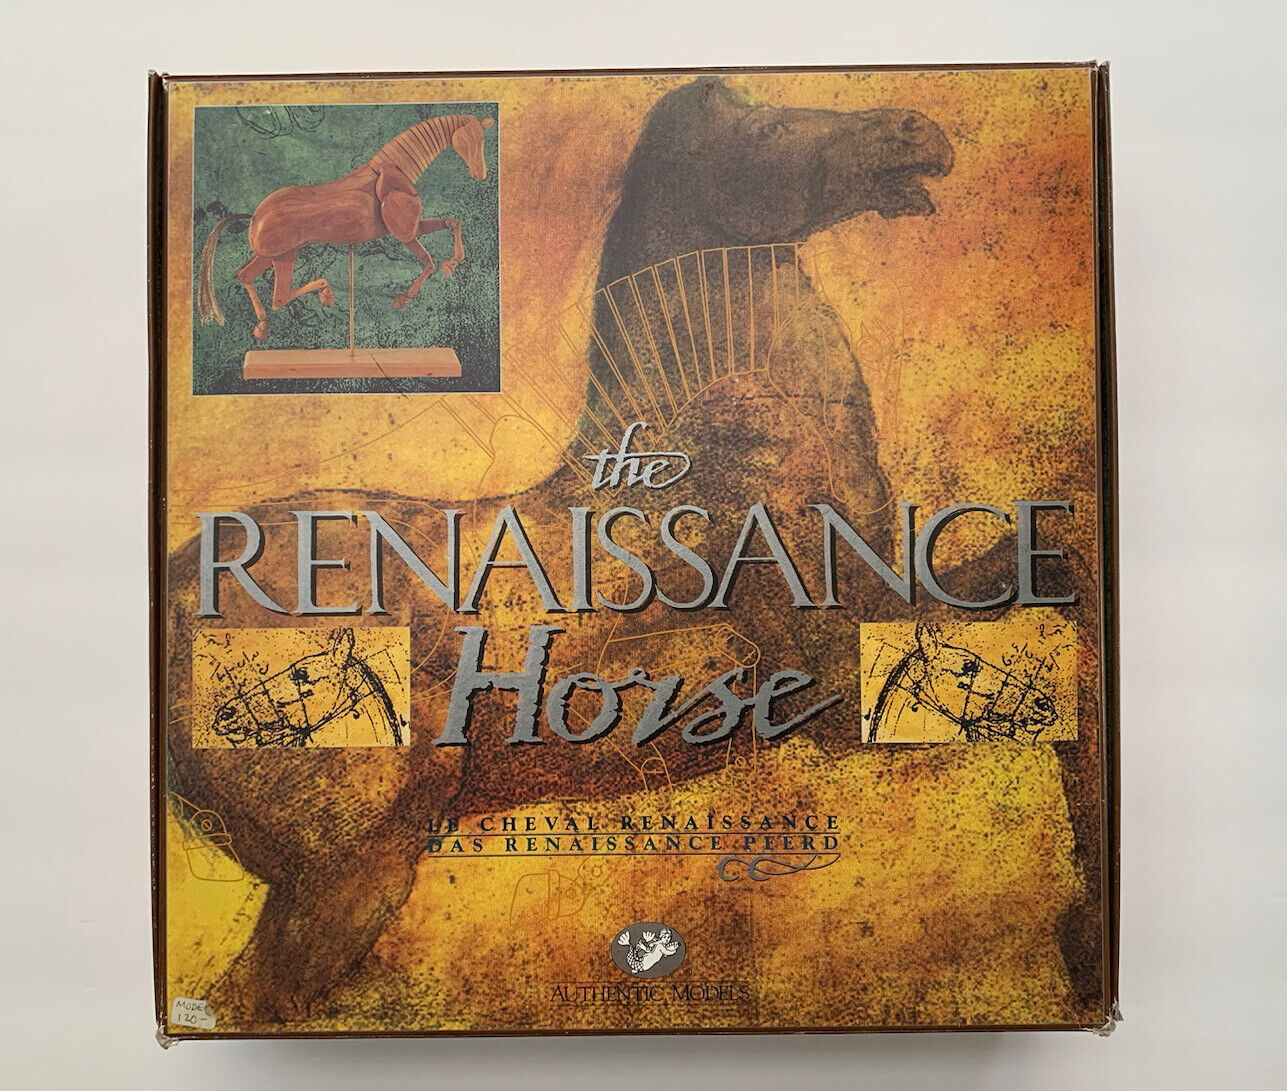 Authentic Models Artist's Renaissance Drawing Horse